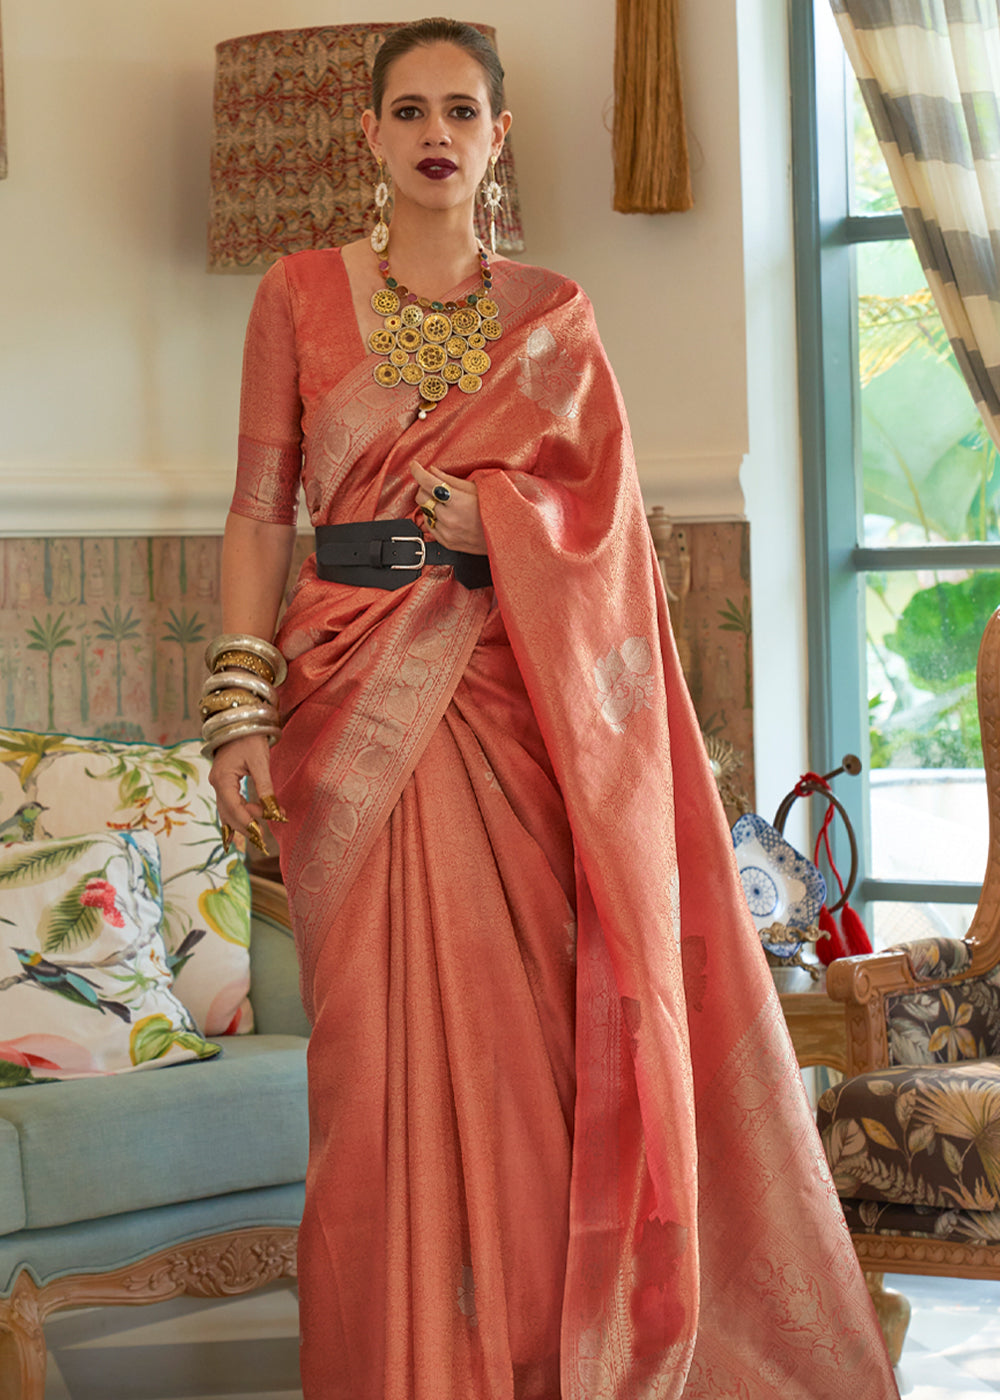 Buy MySilkLove Mona Lisa Peach Woven Banarasi Satin Tissue Silk Saree Online